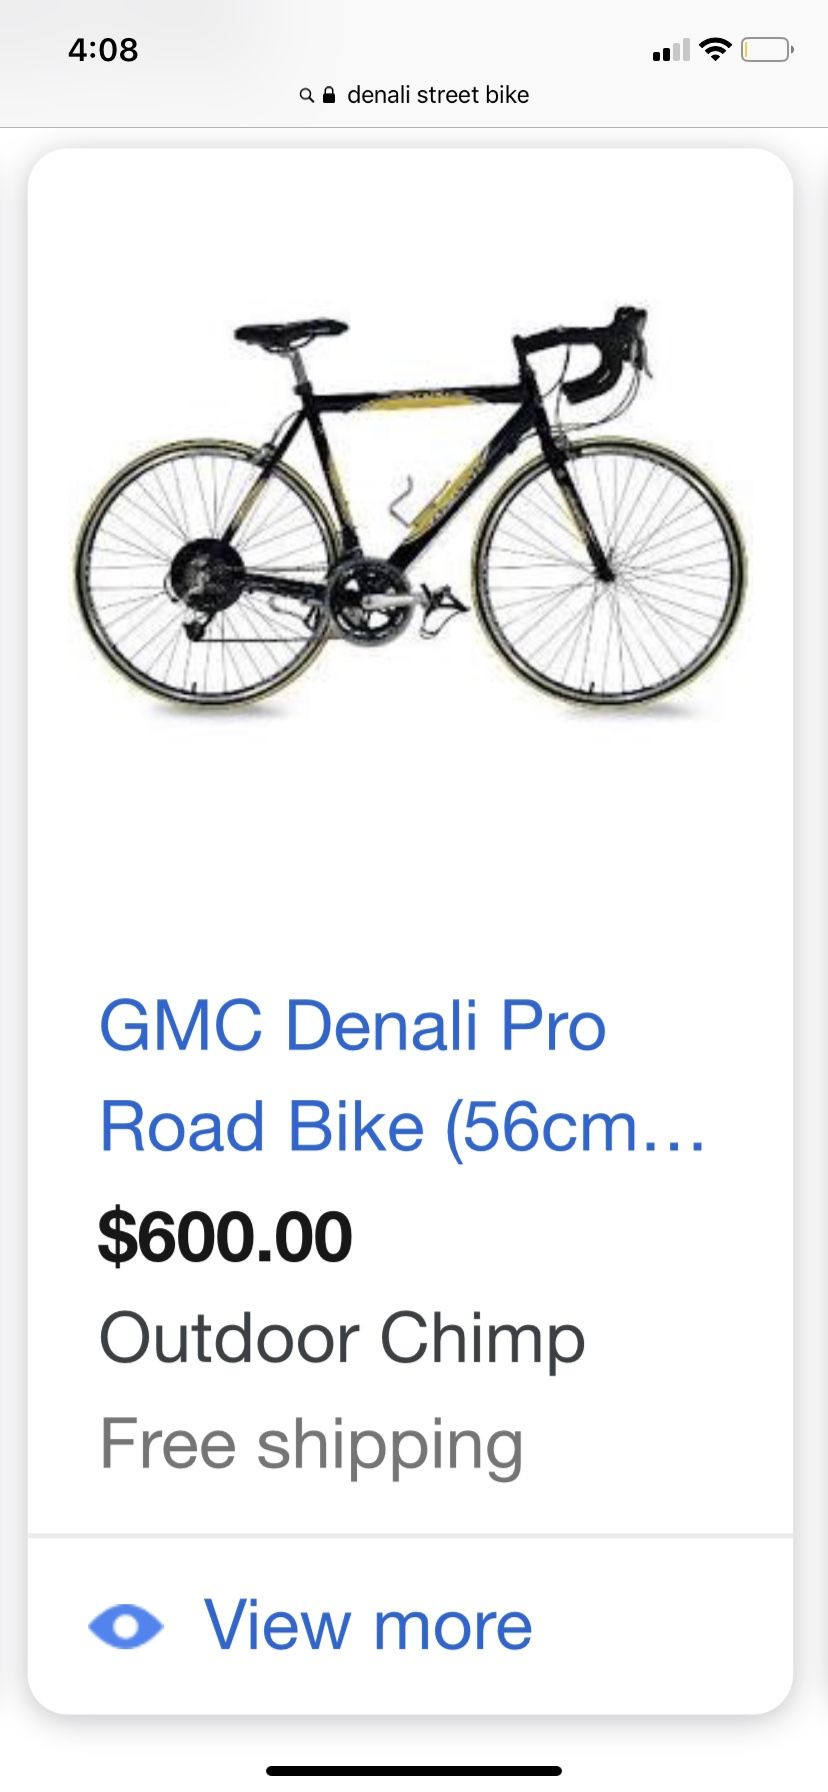 Denali street bike